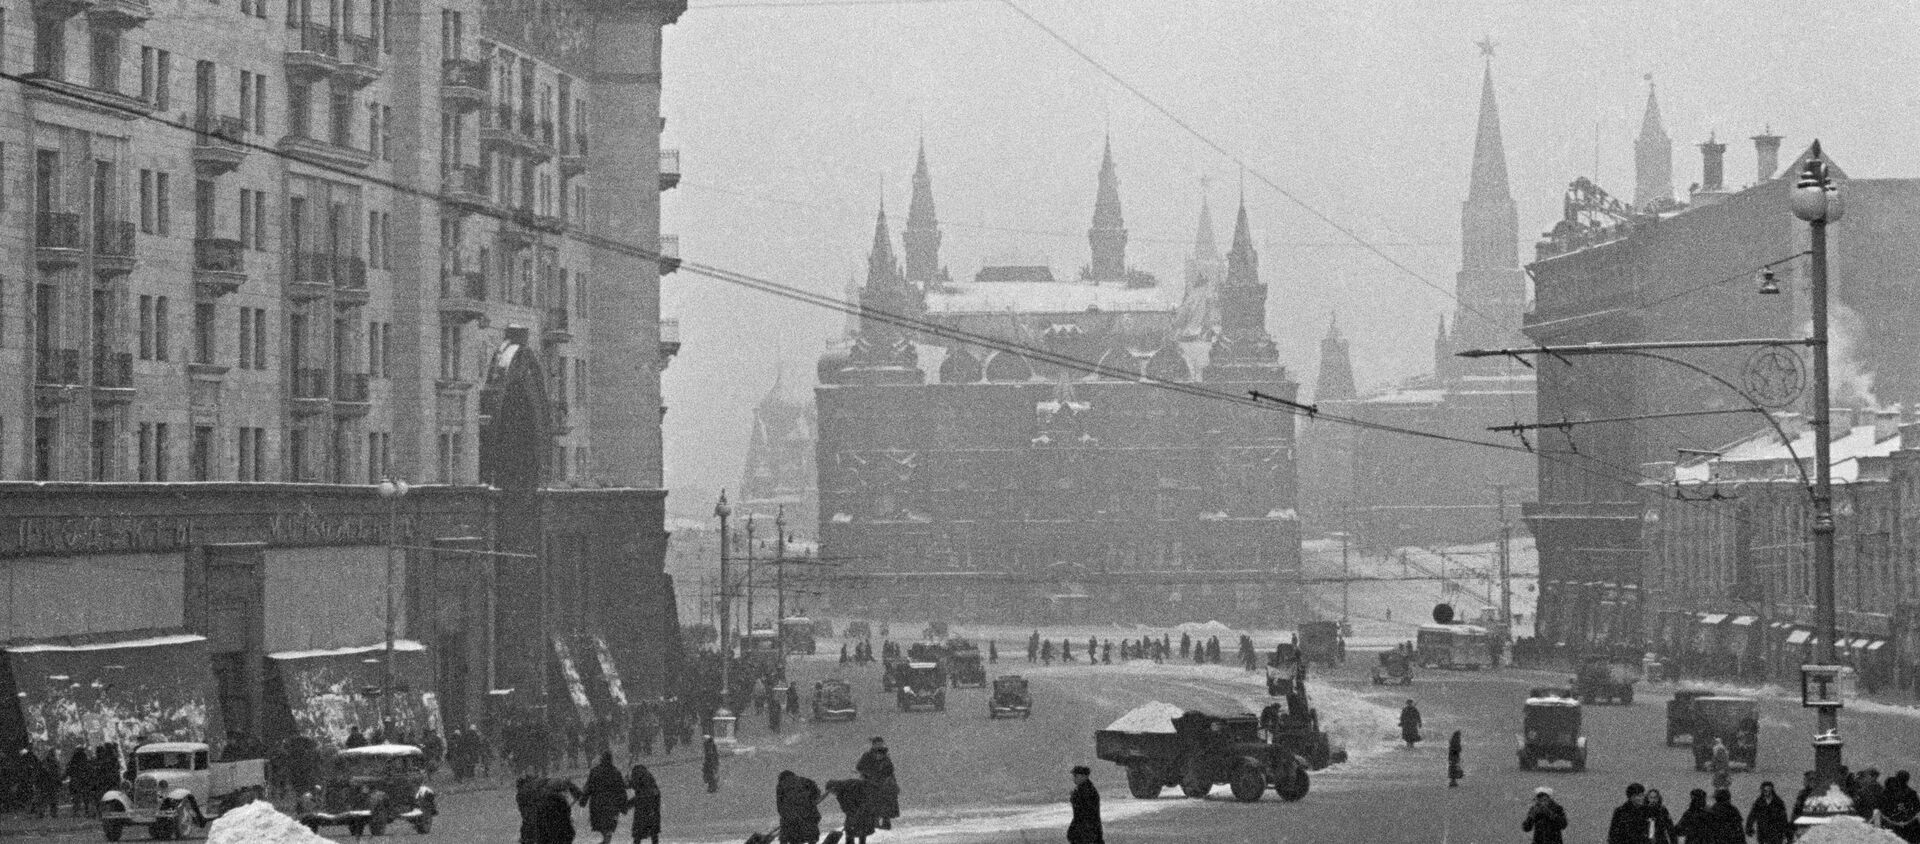 El Museo Estatal de Historia en Moscú durante la Gran Guerra Patria - Sputnik Mundo, 1920, 20.11.2020